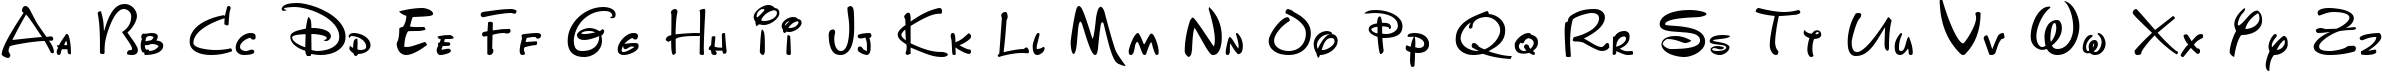 Пример написания английского алфавита шрифтом DisneyPark